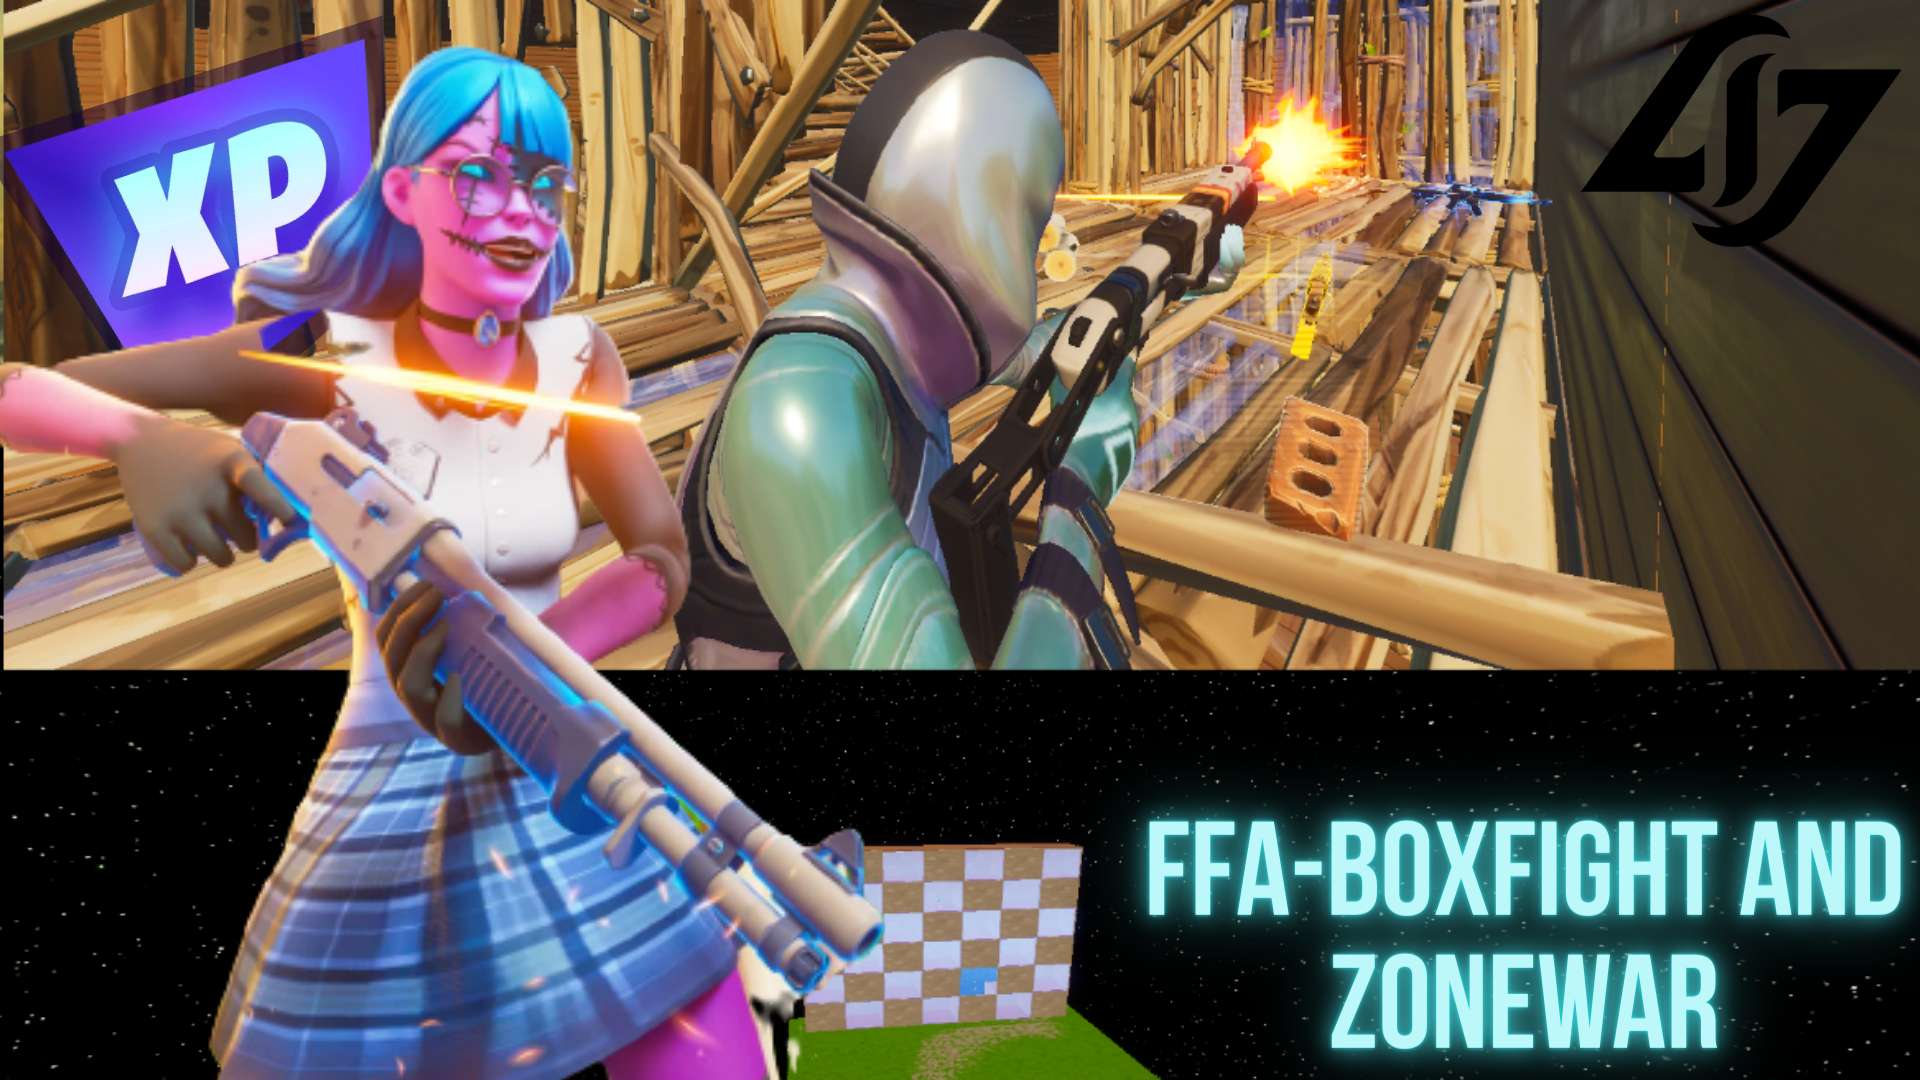 FFA-BOXFIGHT AND ZONEWAR